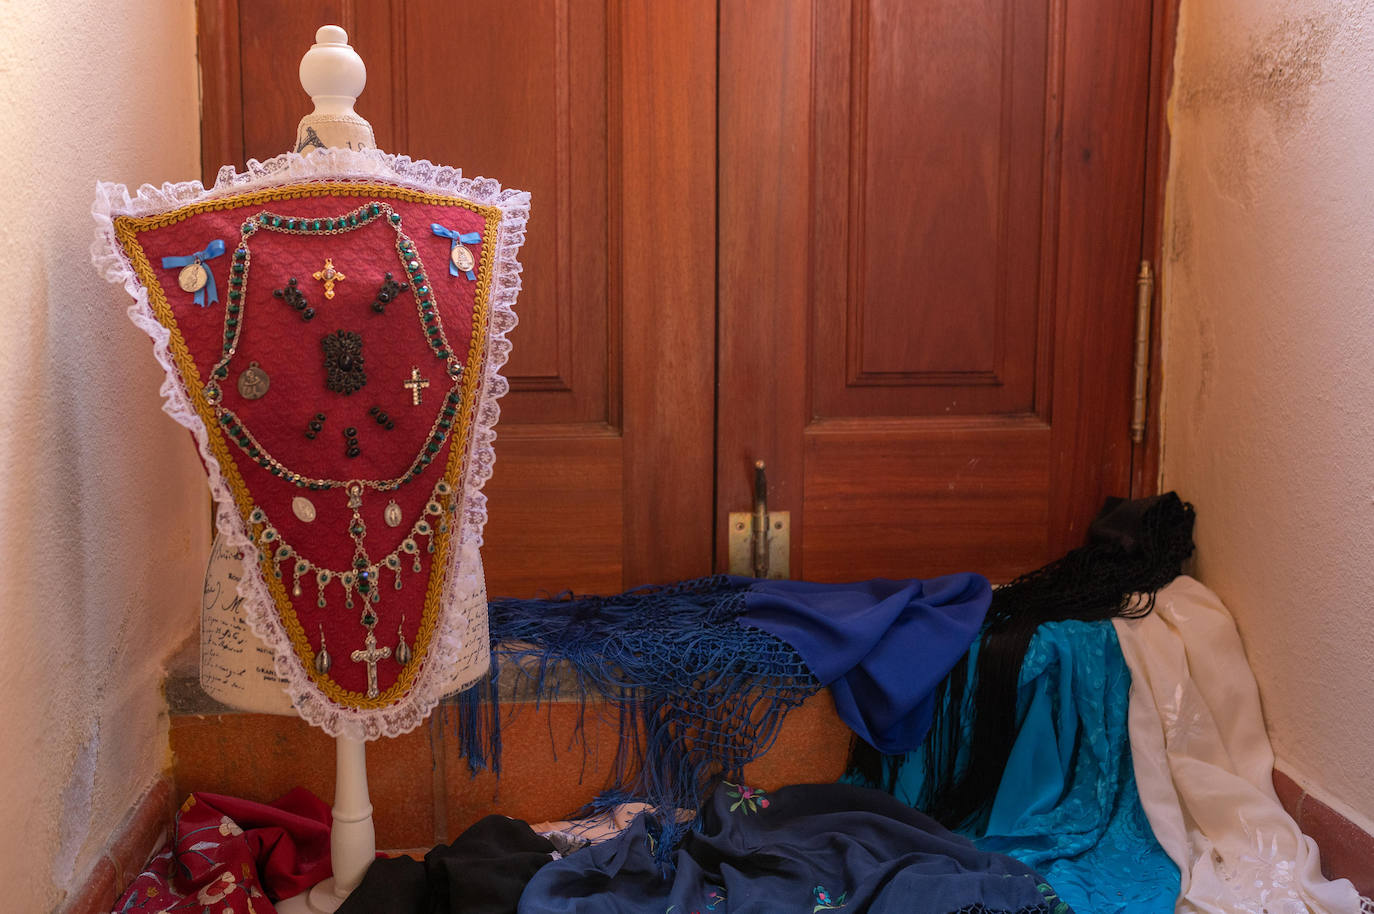 Fotos: Exposición de vestimenta tradicional en Ingenio